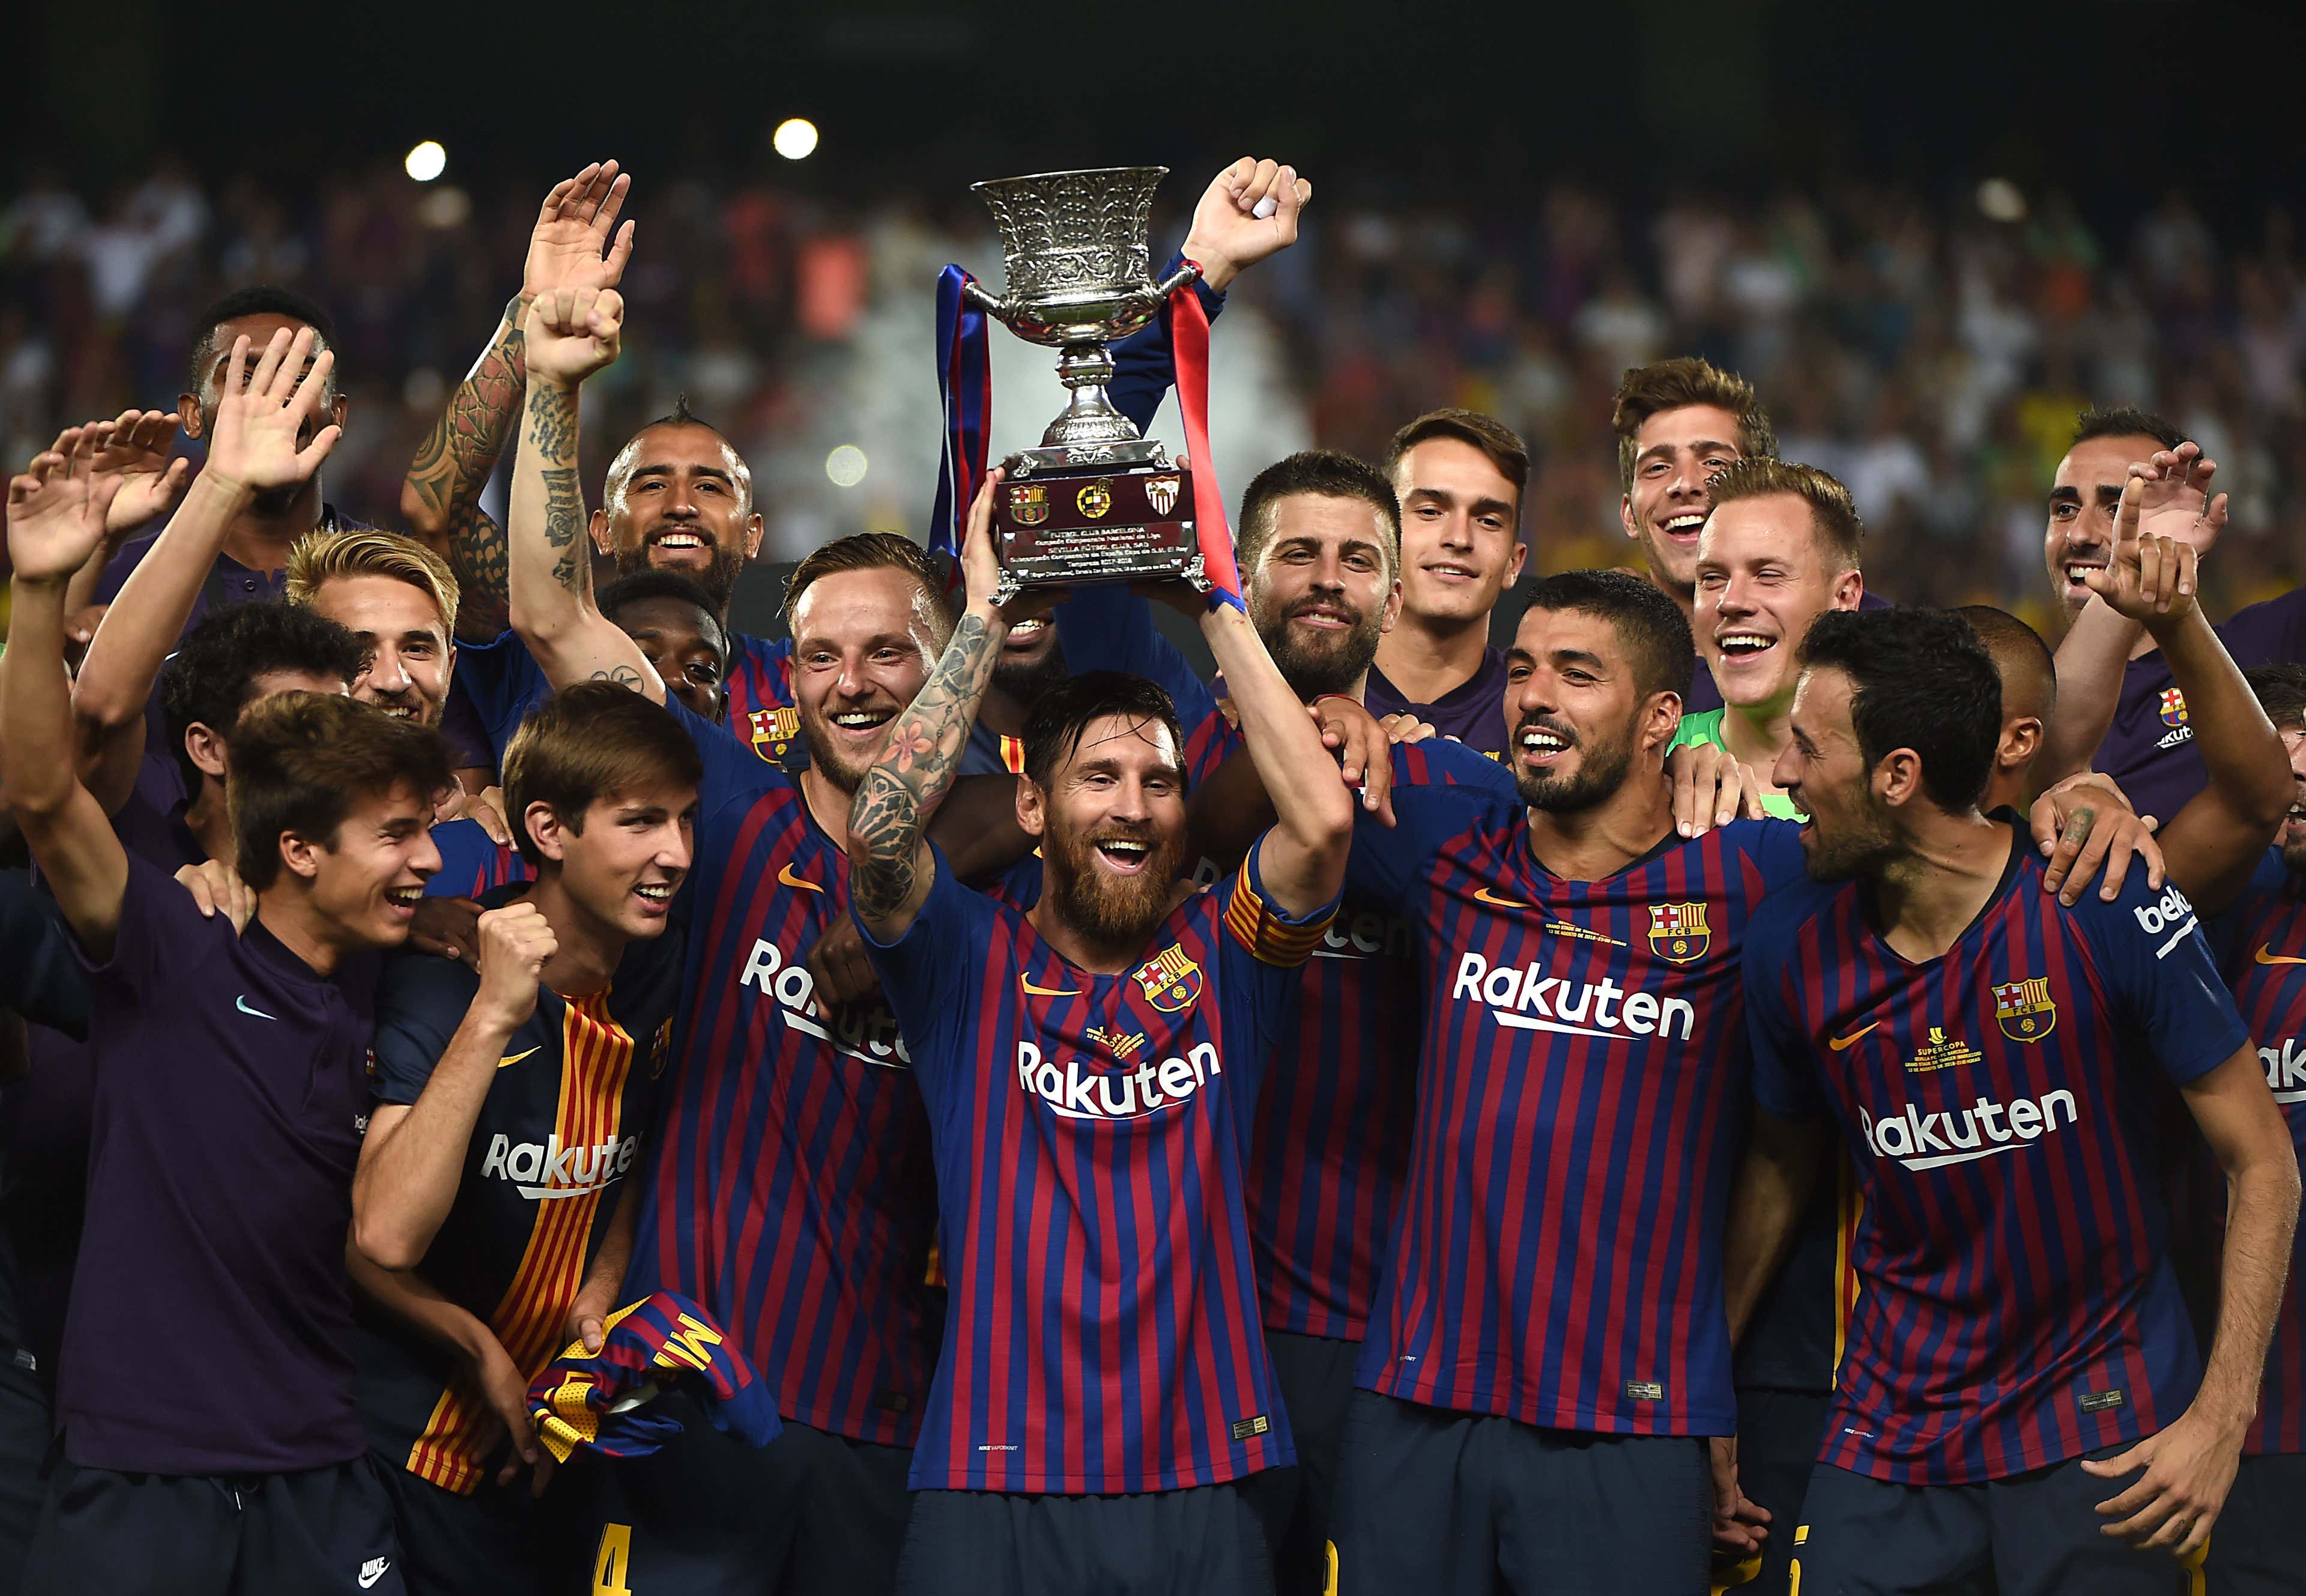 Barcelona won Spanish Super Cup 2018